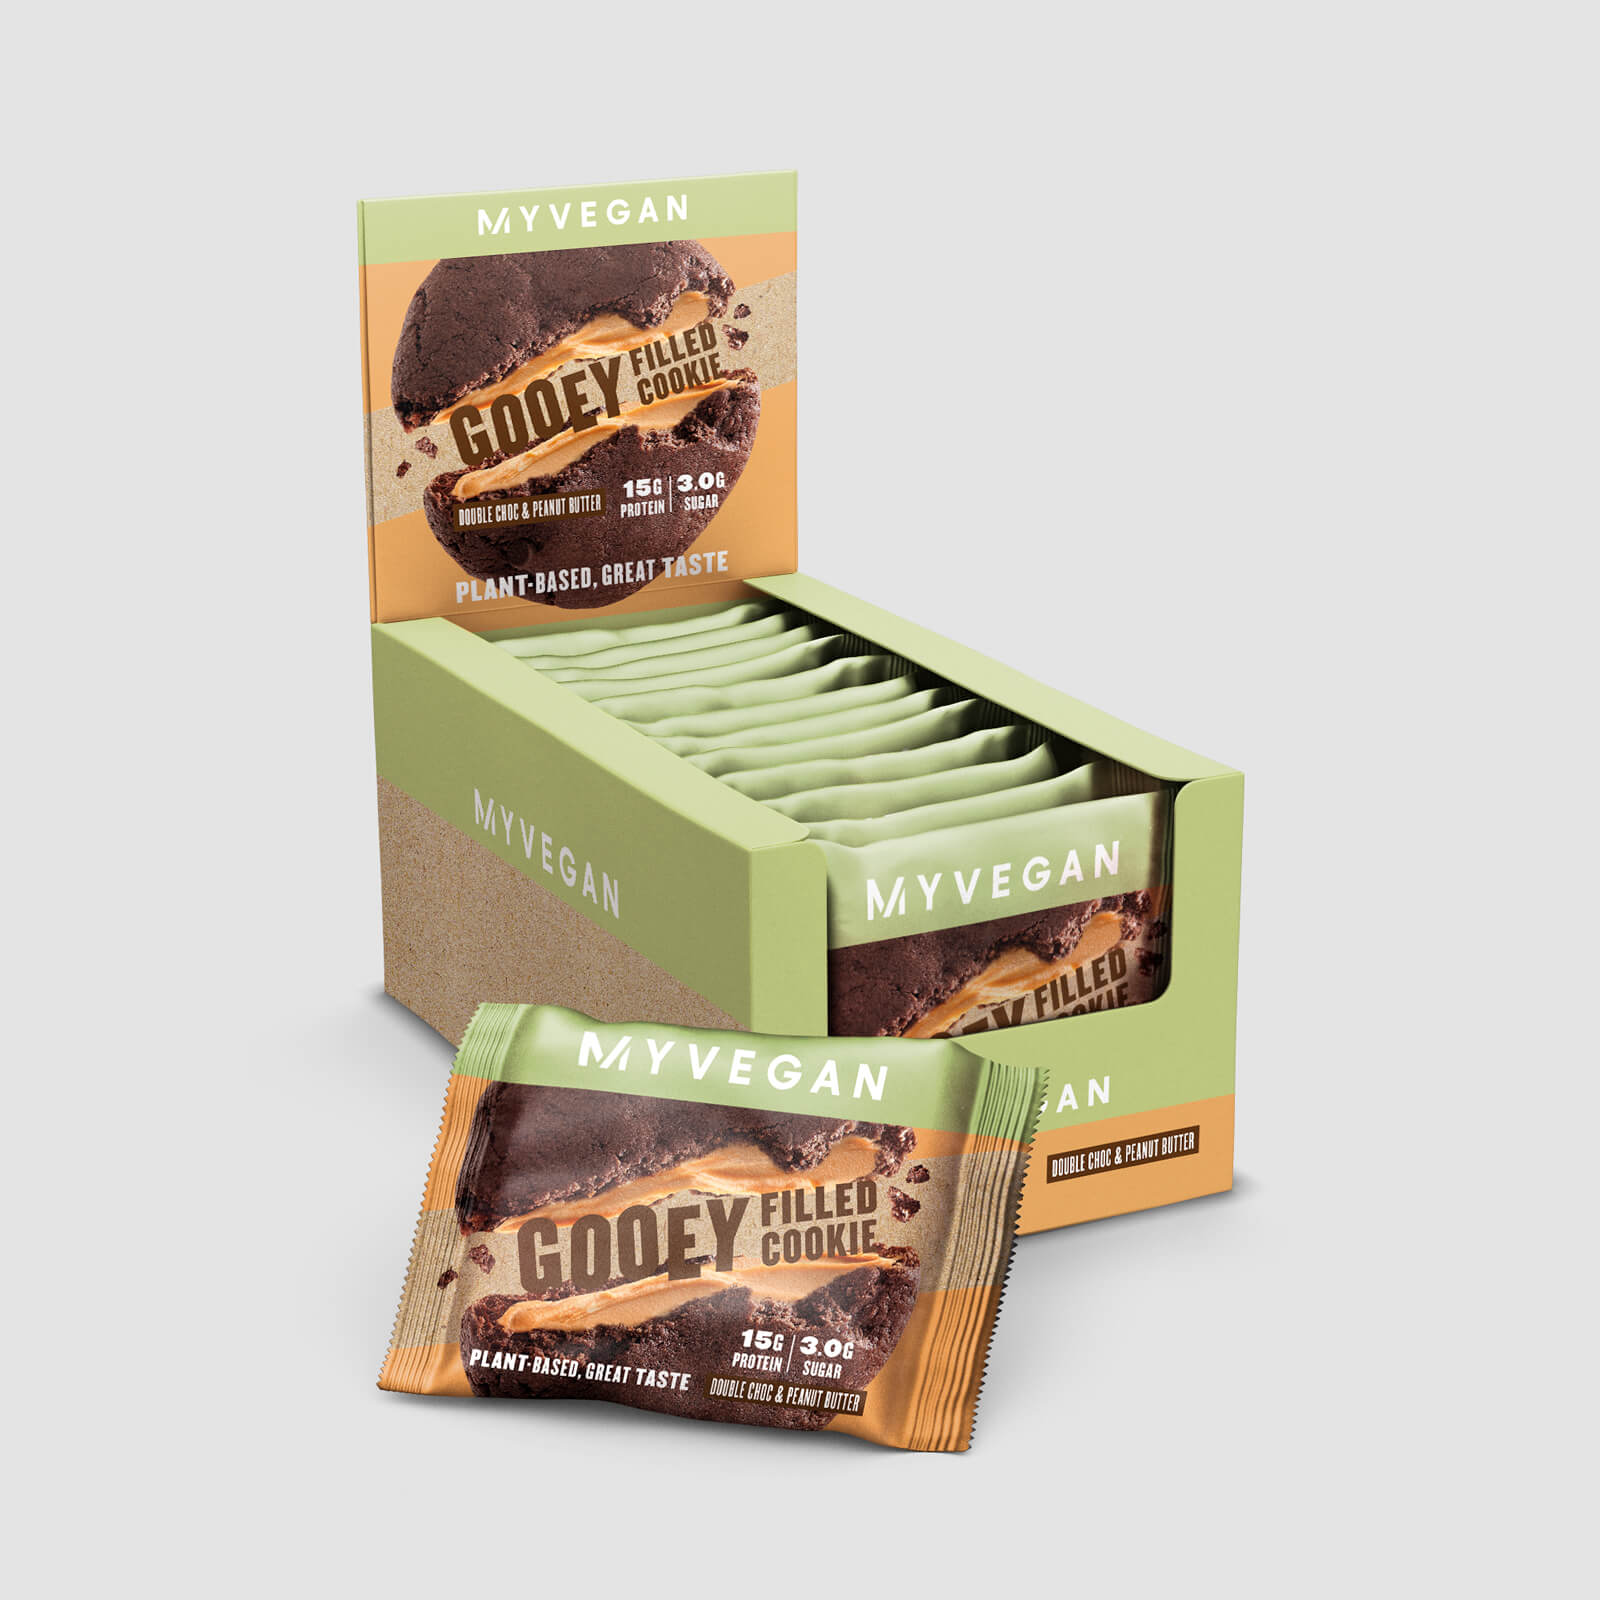 Myvegan Veganer Protein-Cookie mit Füllung - Double Chocolate & Peanut Butter